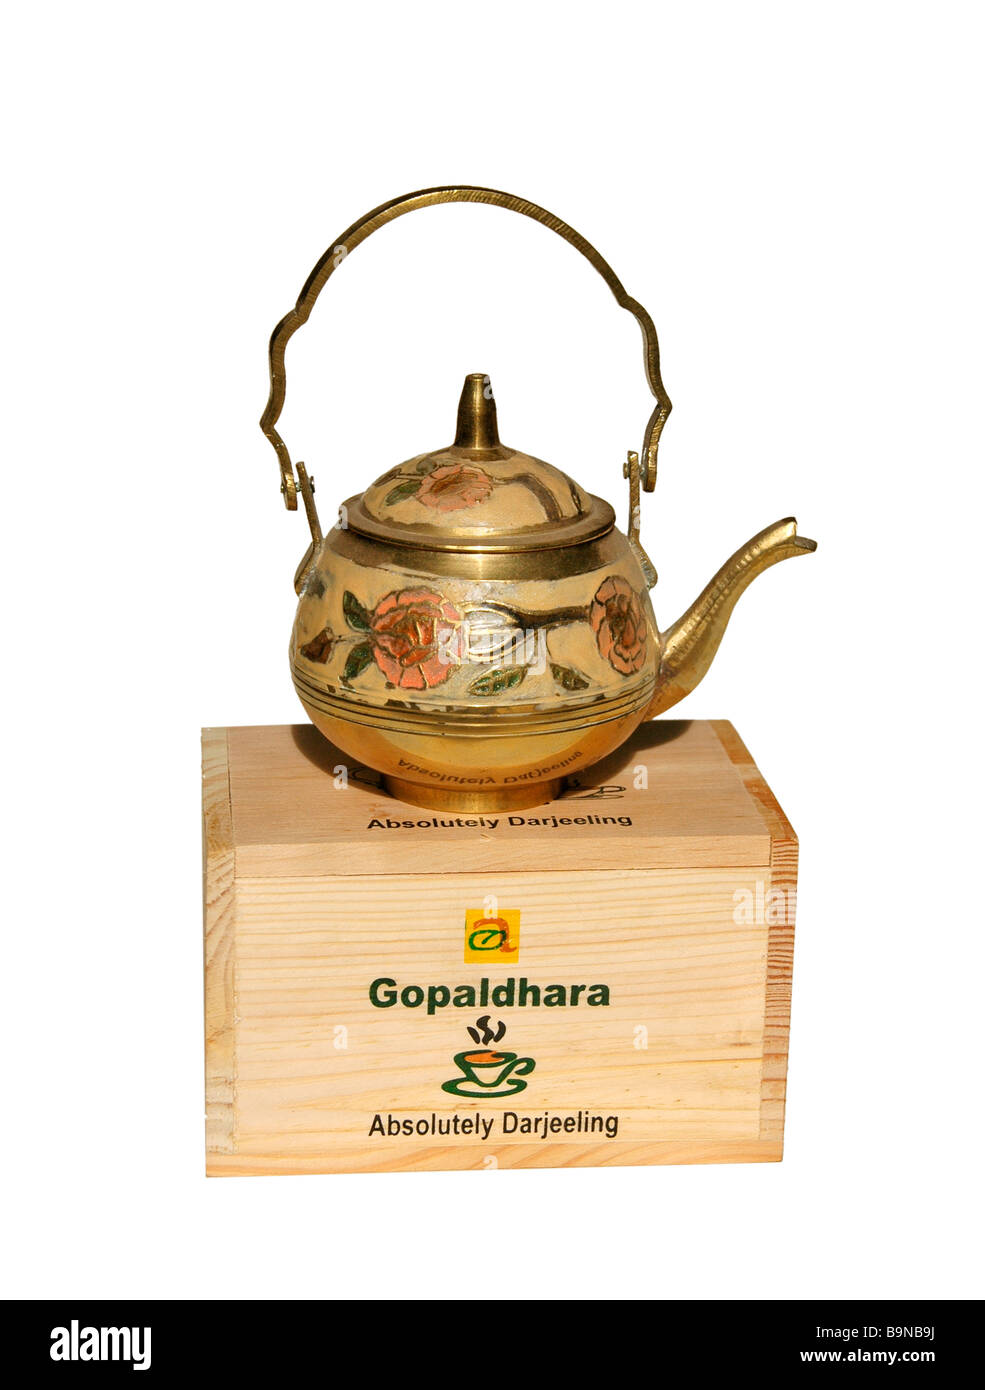 Une théière en laiton ouvragé situé au-dessus d'une boîte de thé Darjeeling. Banque D'Images